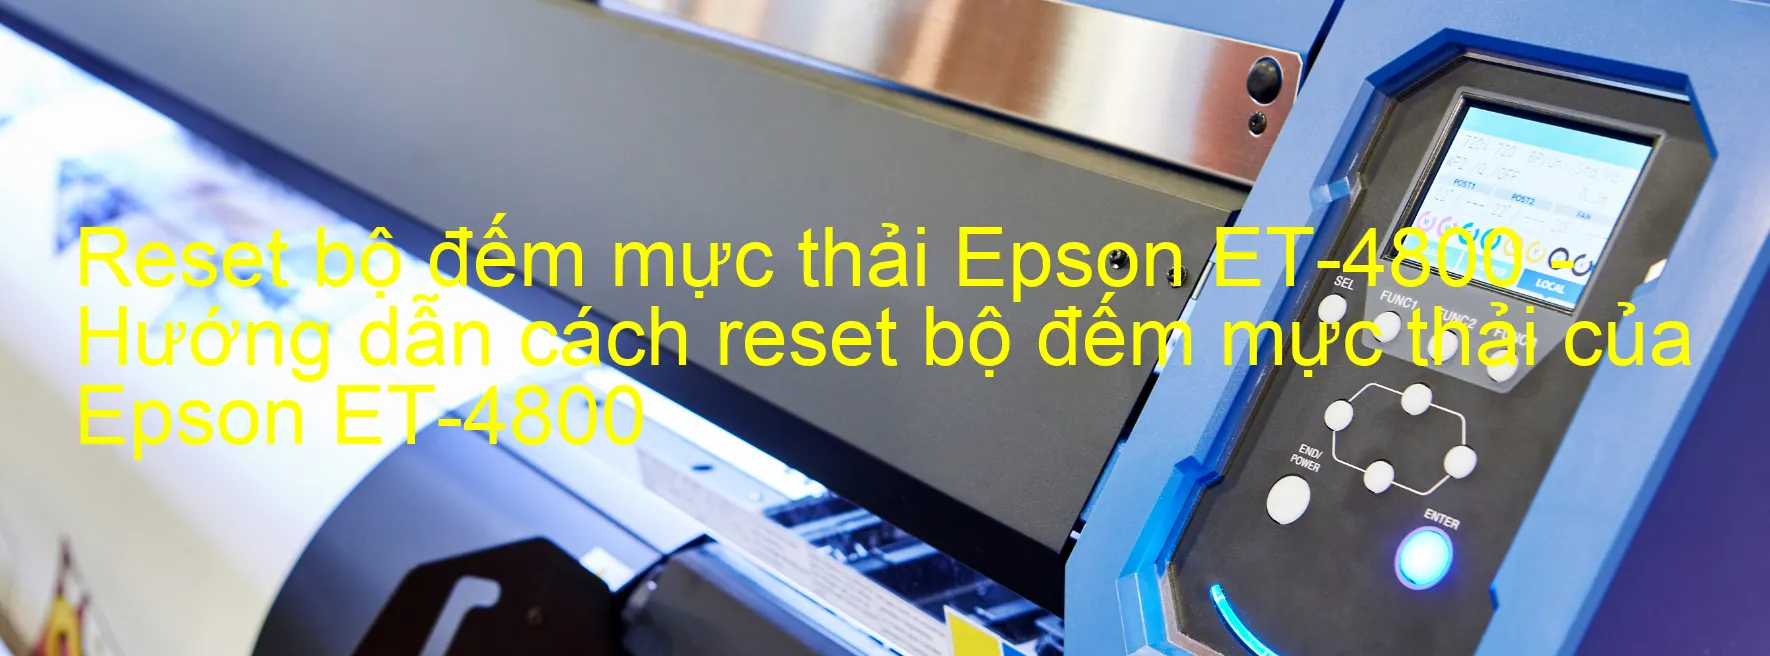 Reset bộ đếm mực thải Epson ET-4800 - Hướng dẫn cách reset bộ đếm mực thải của Epson ET-4800